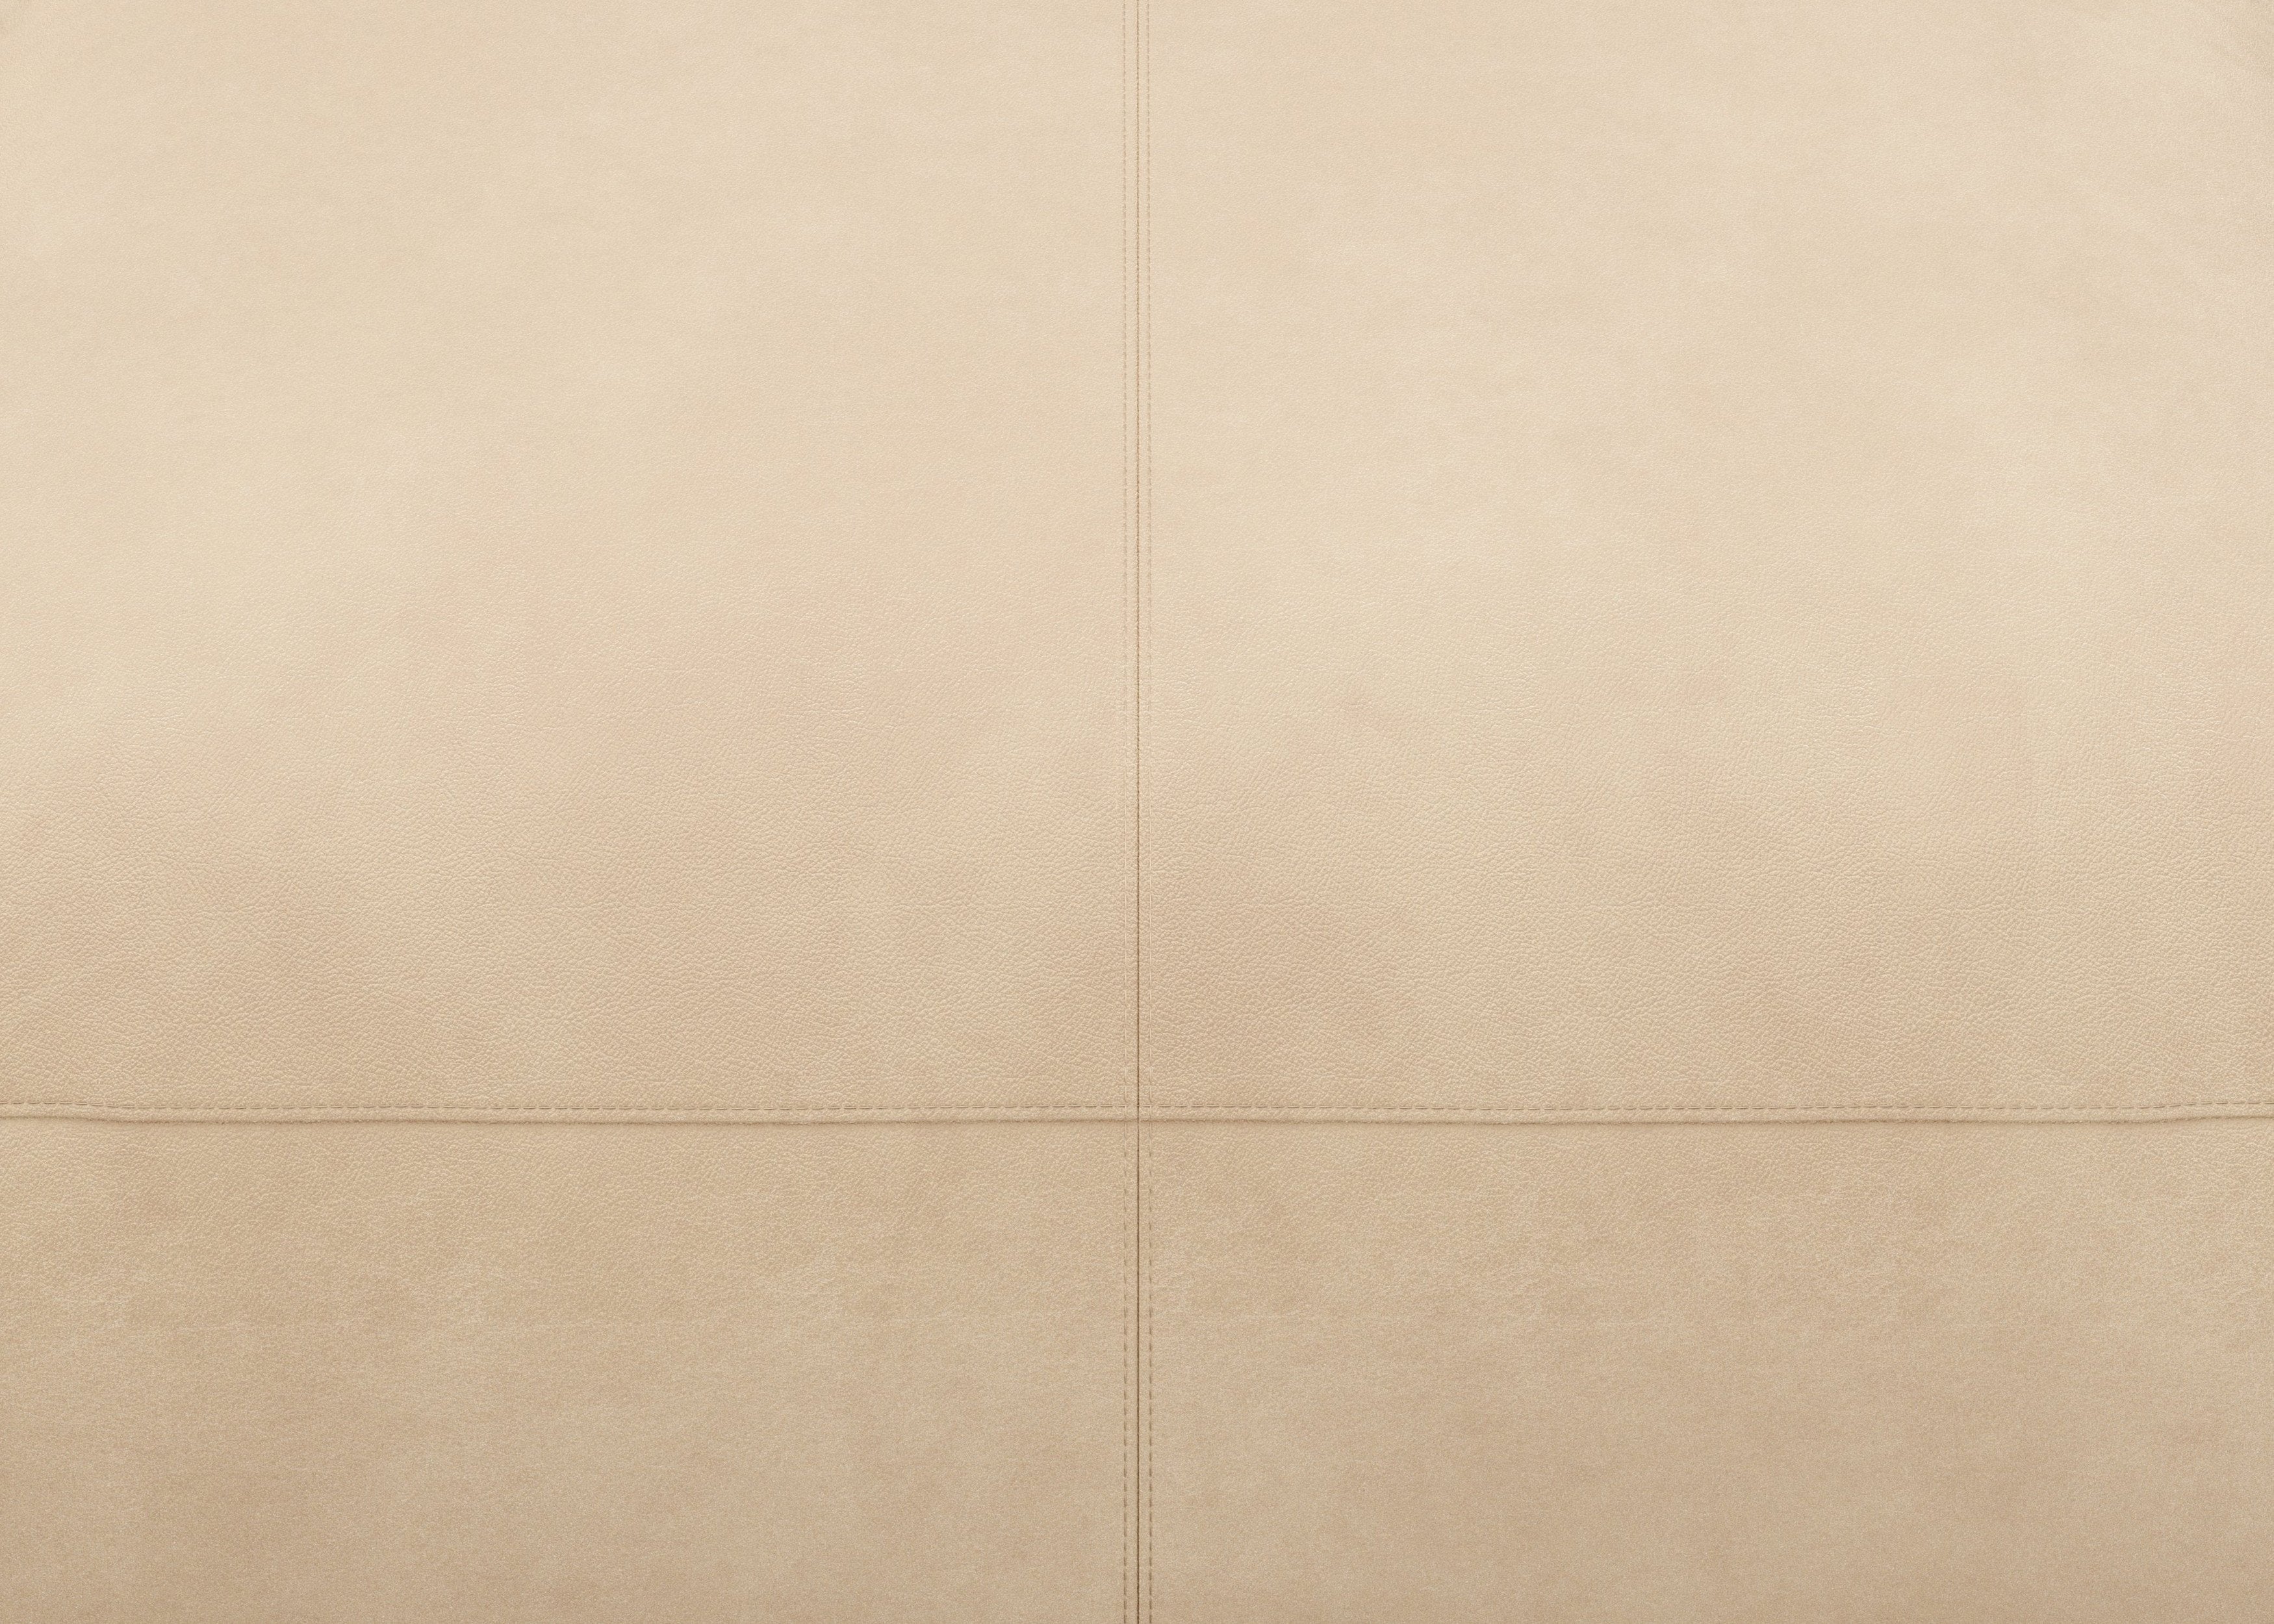 vetsak®-Two Seat Sofa S Leather beige